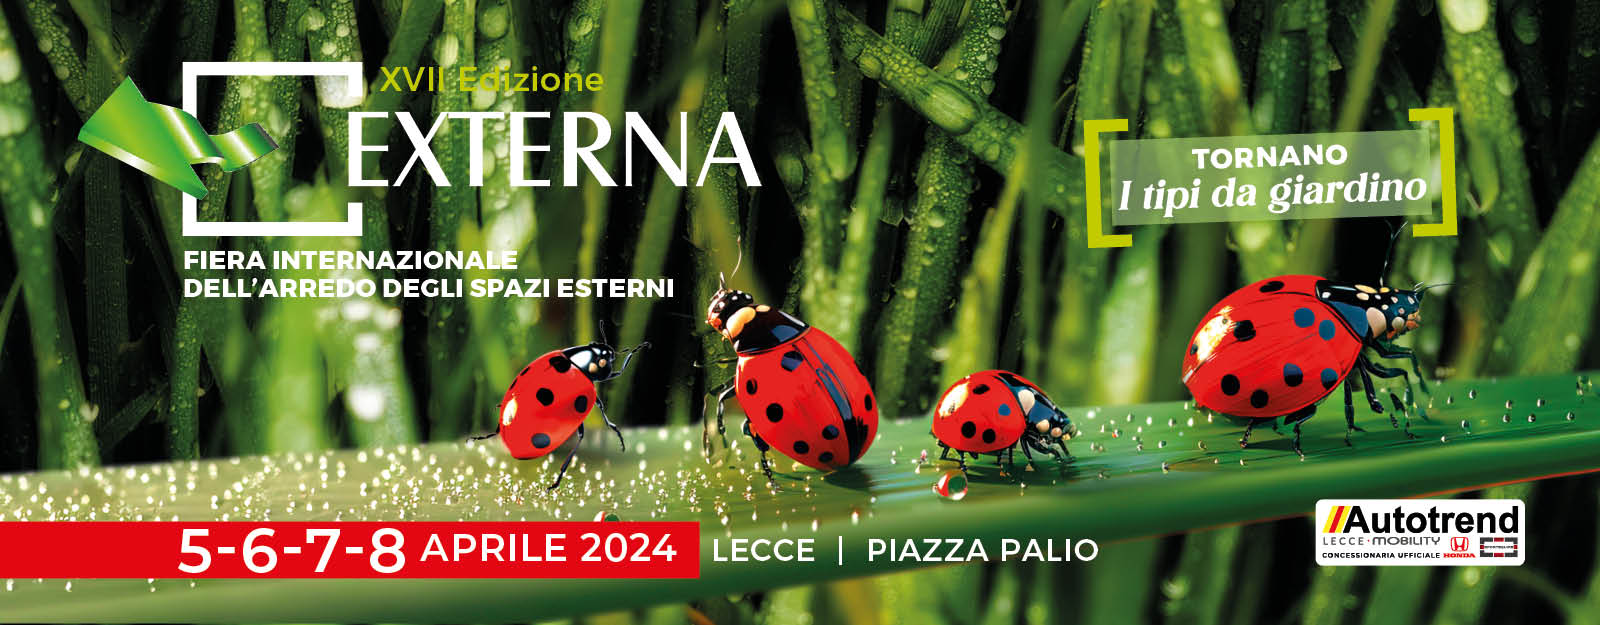 Externa Expo Lecce 2024